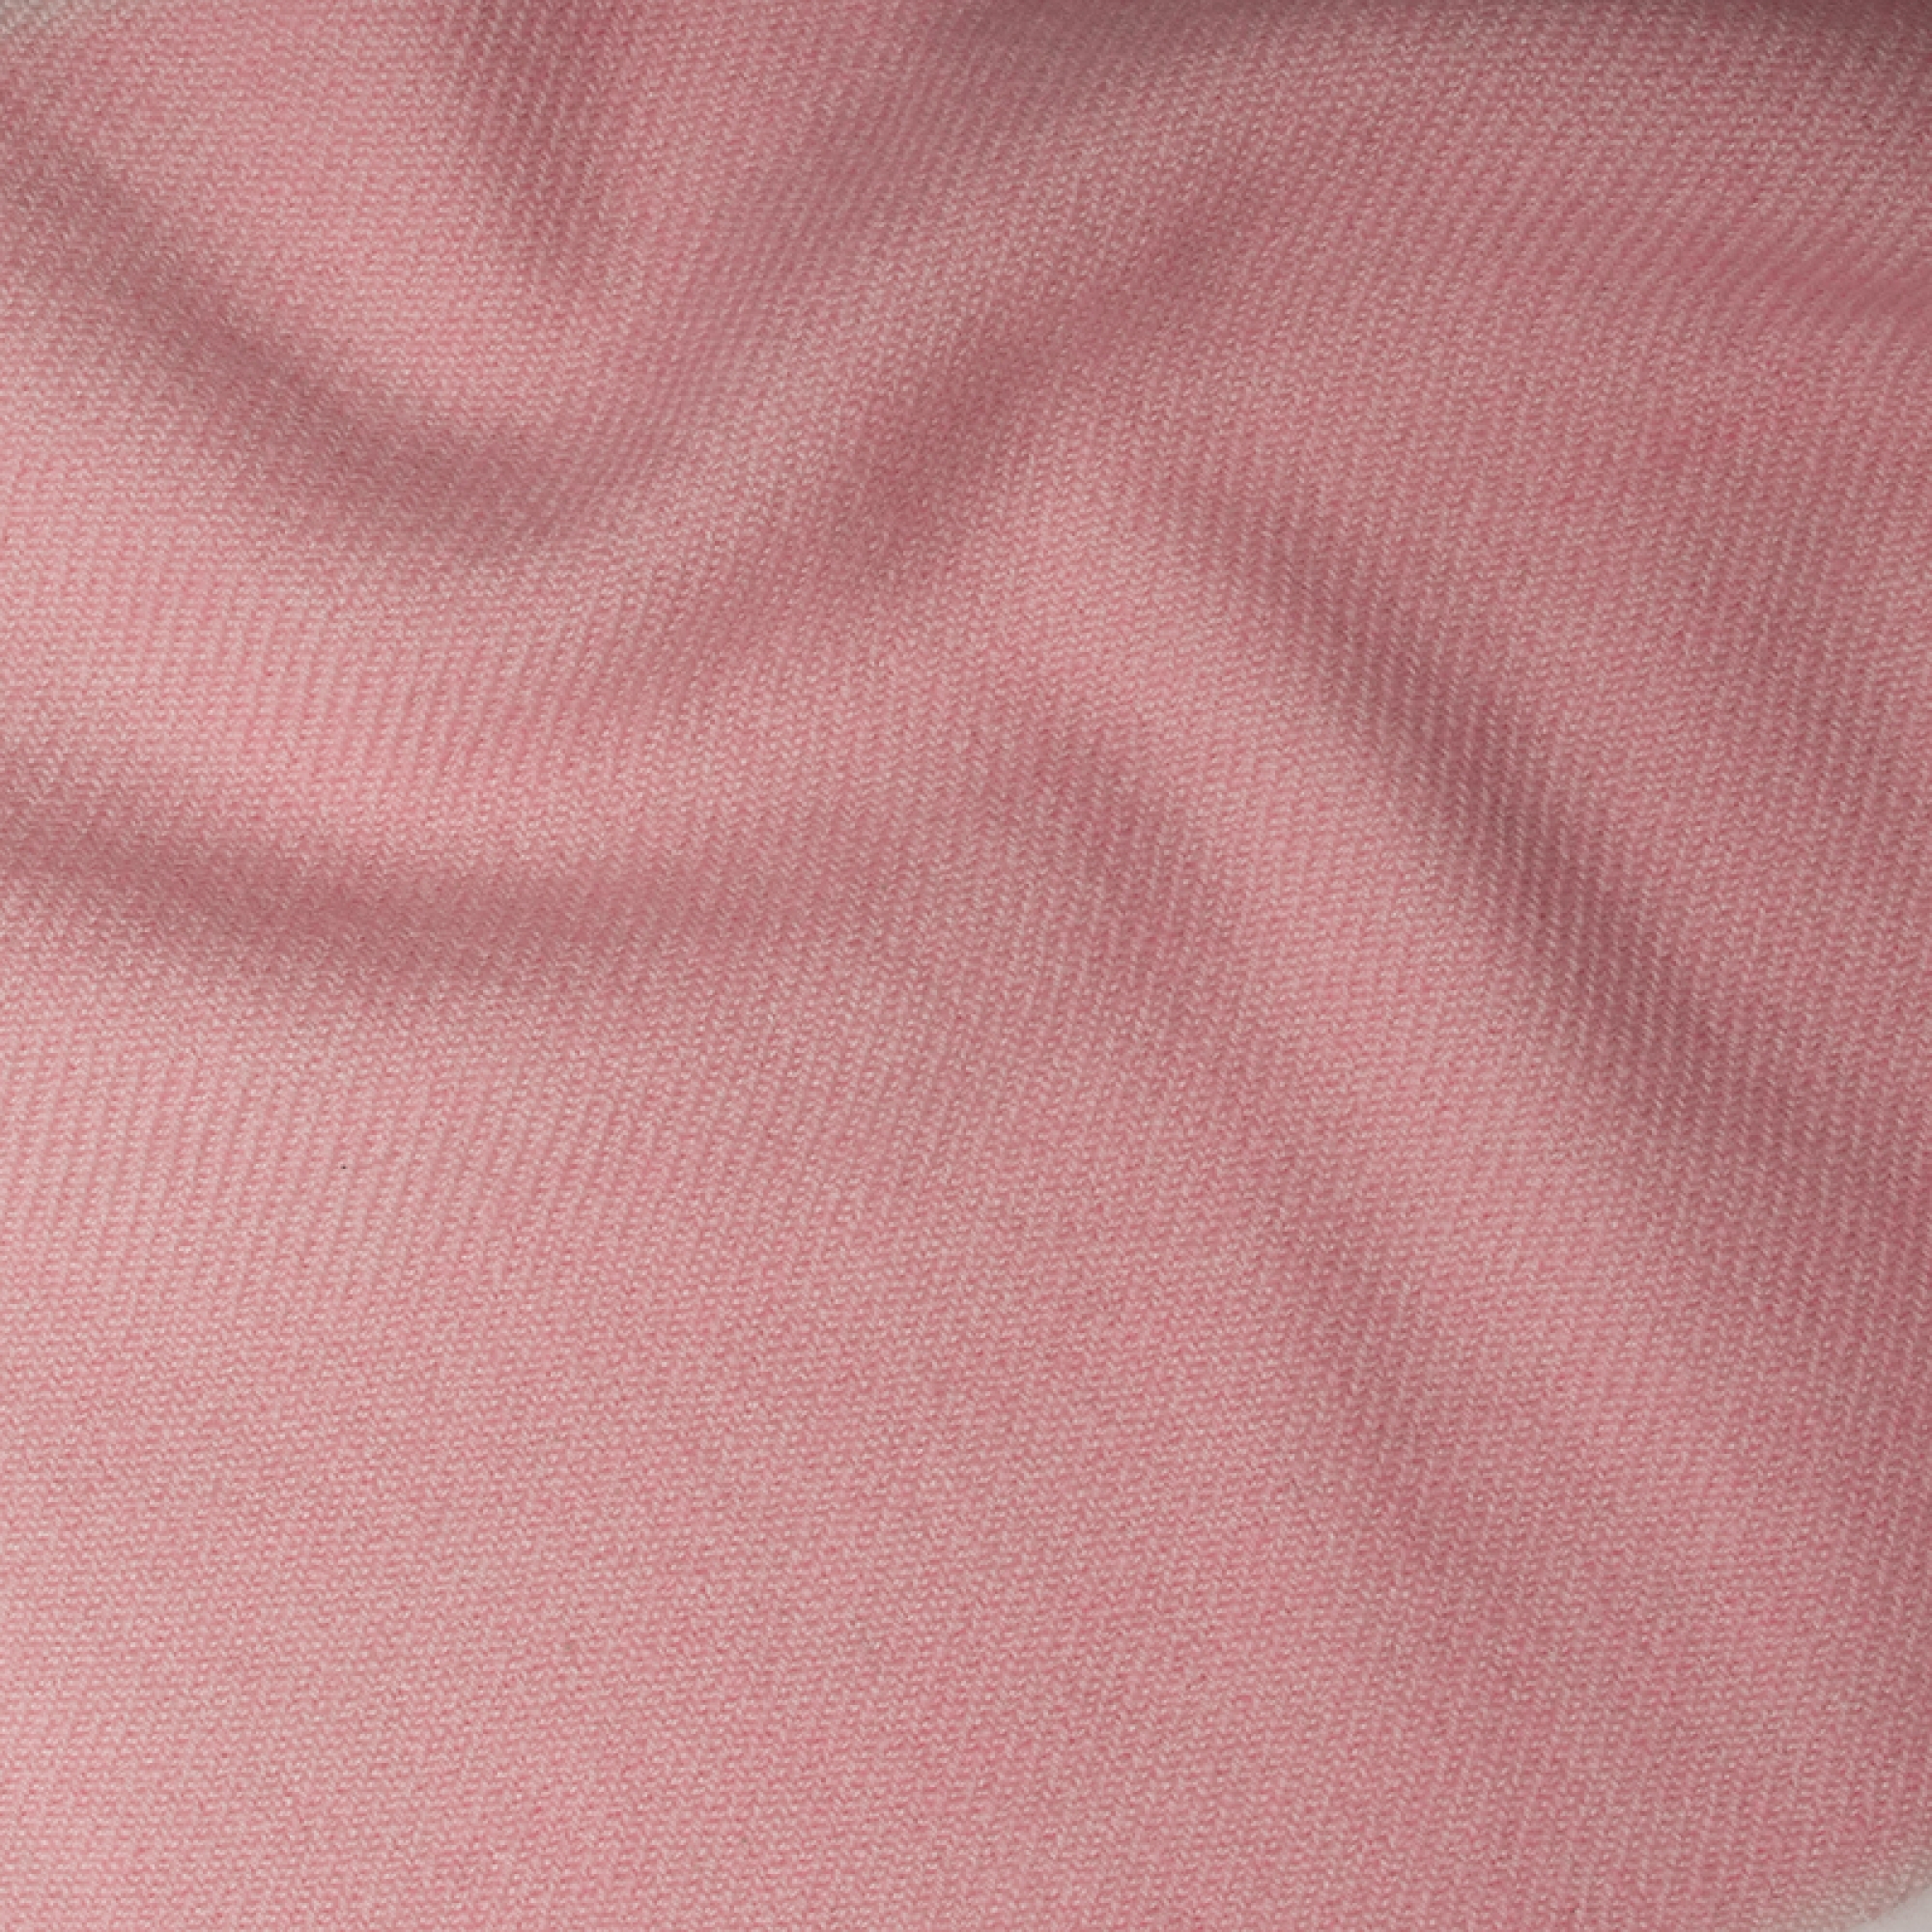 Cashmere accessori plaid toodoo plain m 180 x 220 rosa confetto 180 x 220 cm